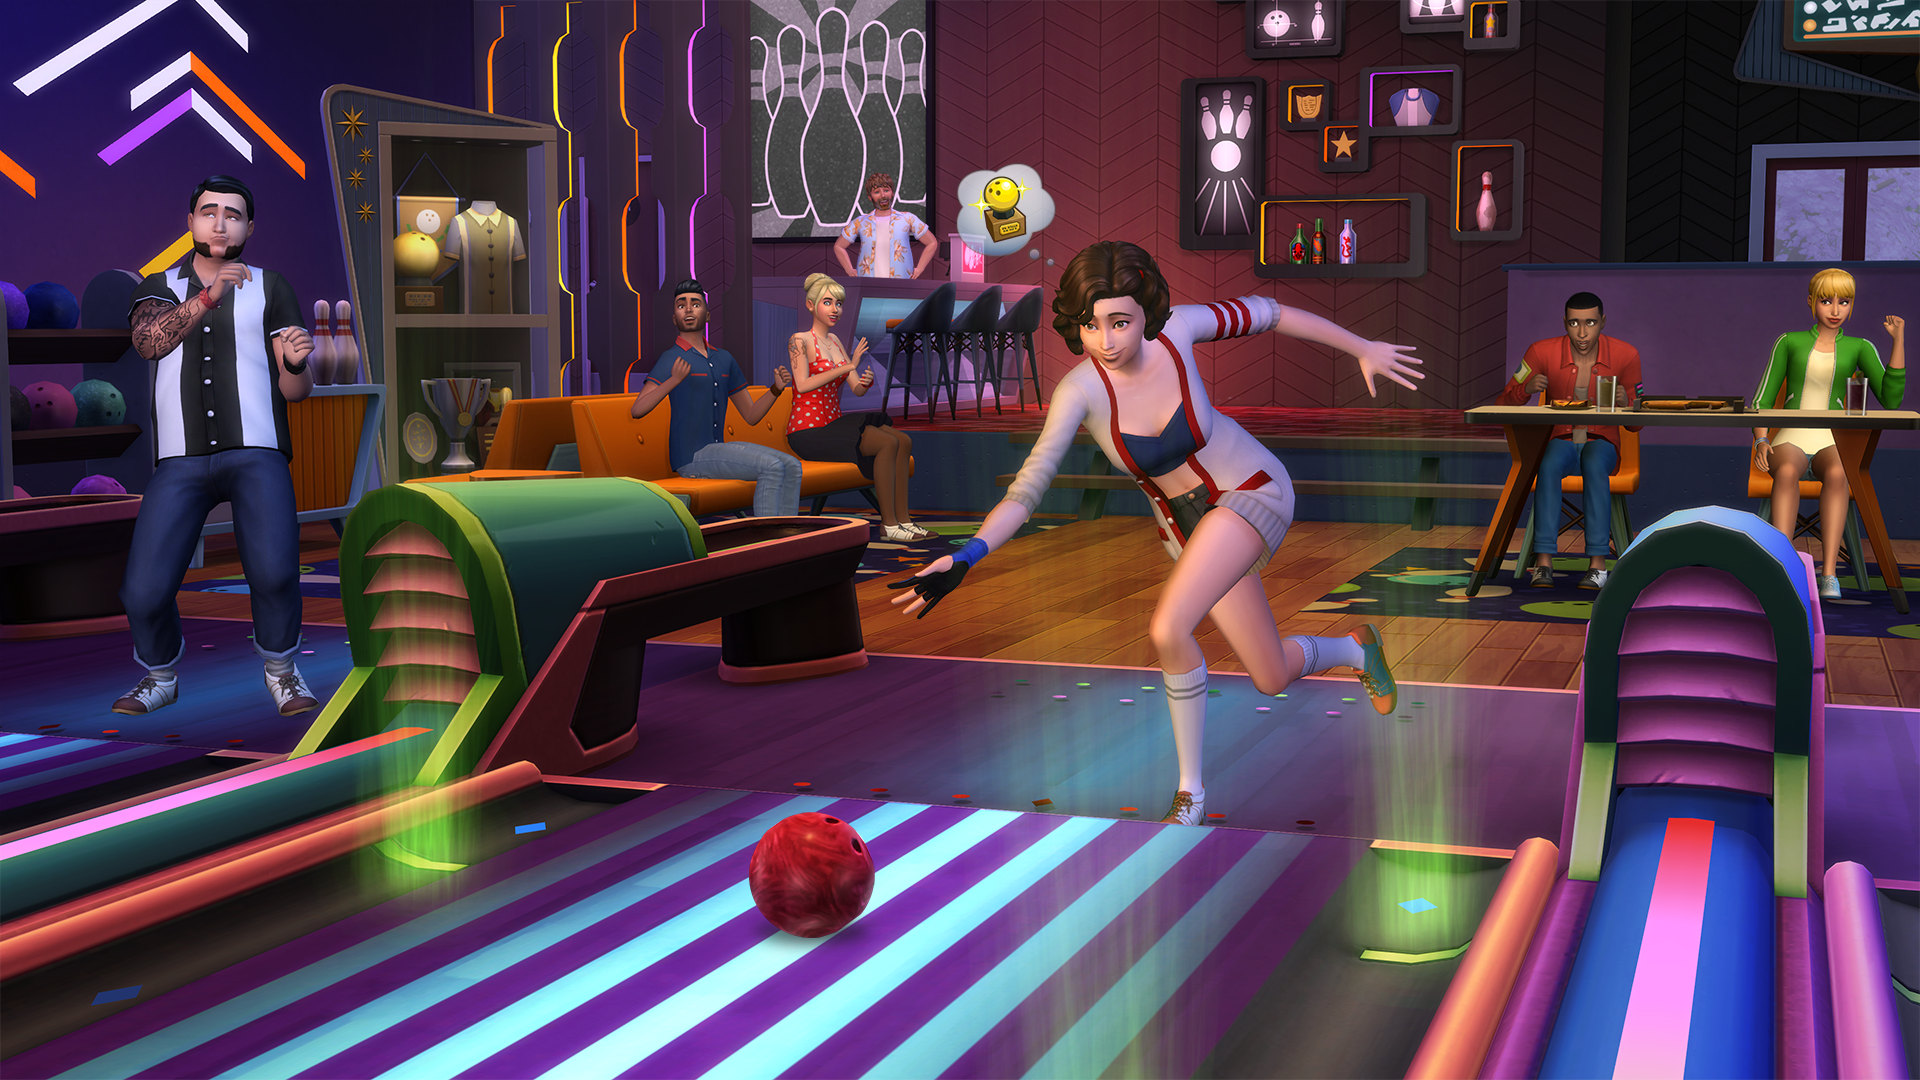 Imagen - Los Sims 4 Noche de Bolos.png | SimsPedia | FANDOM powered by ...